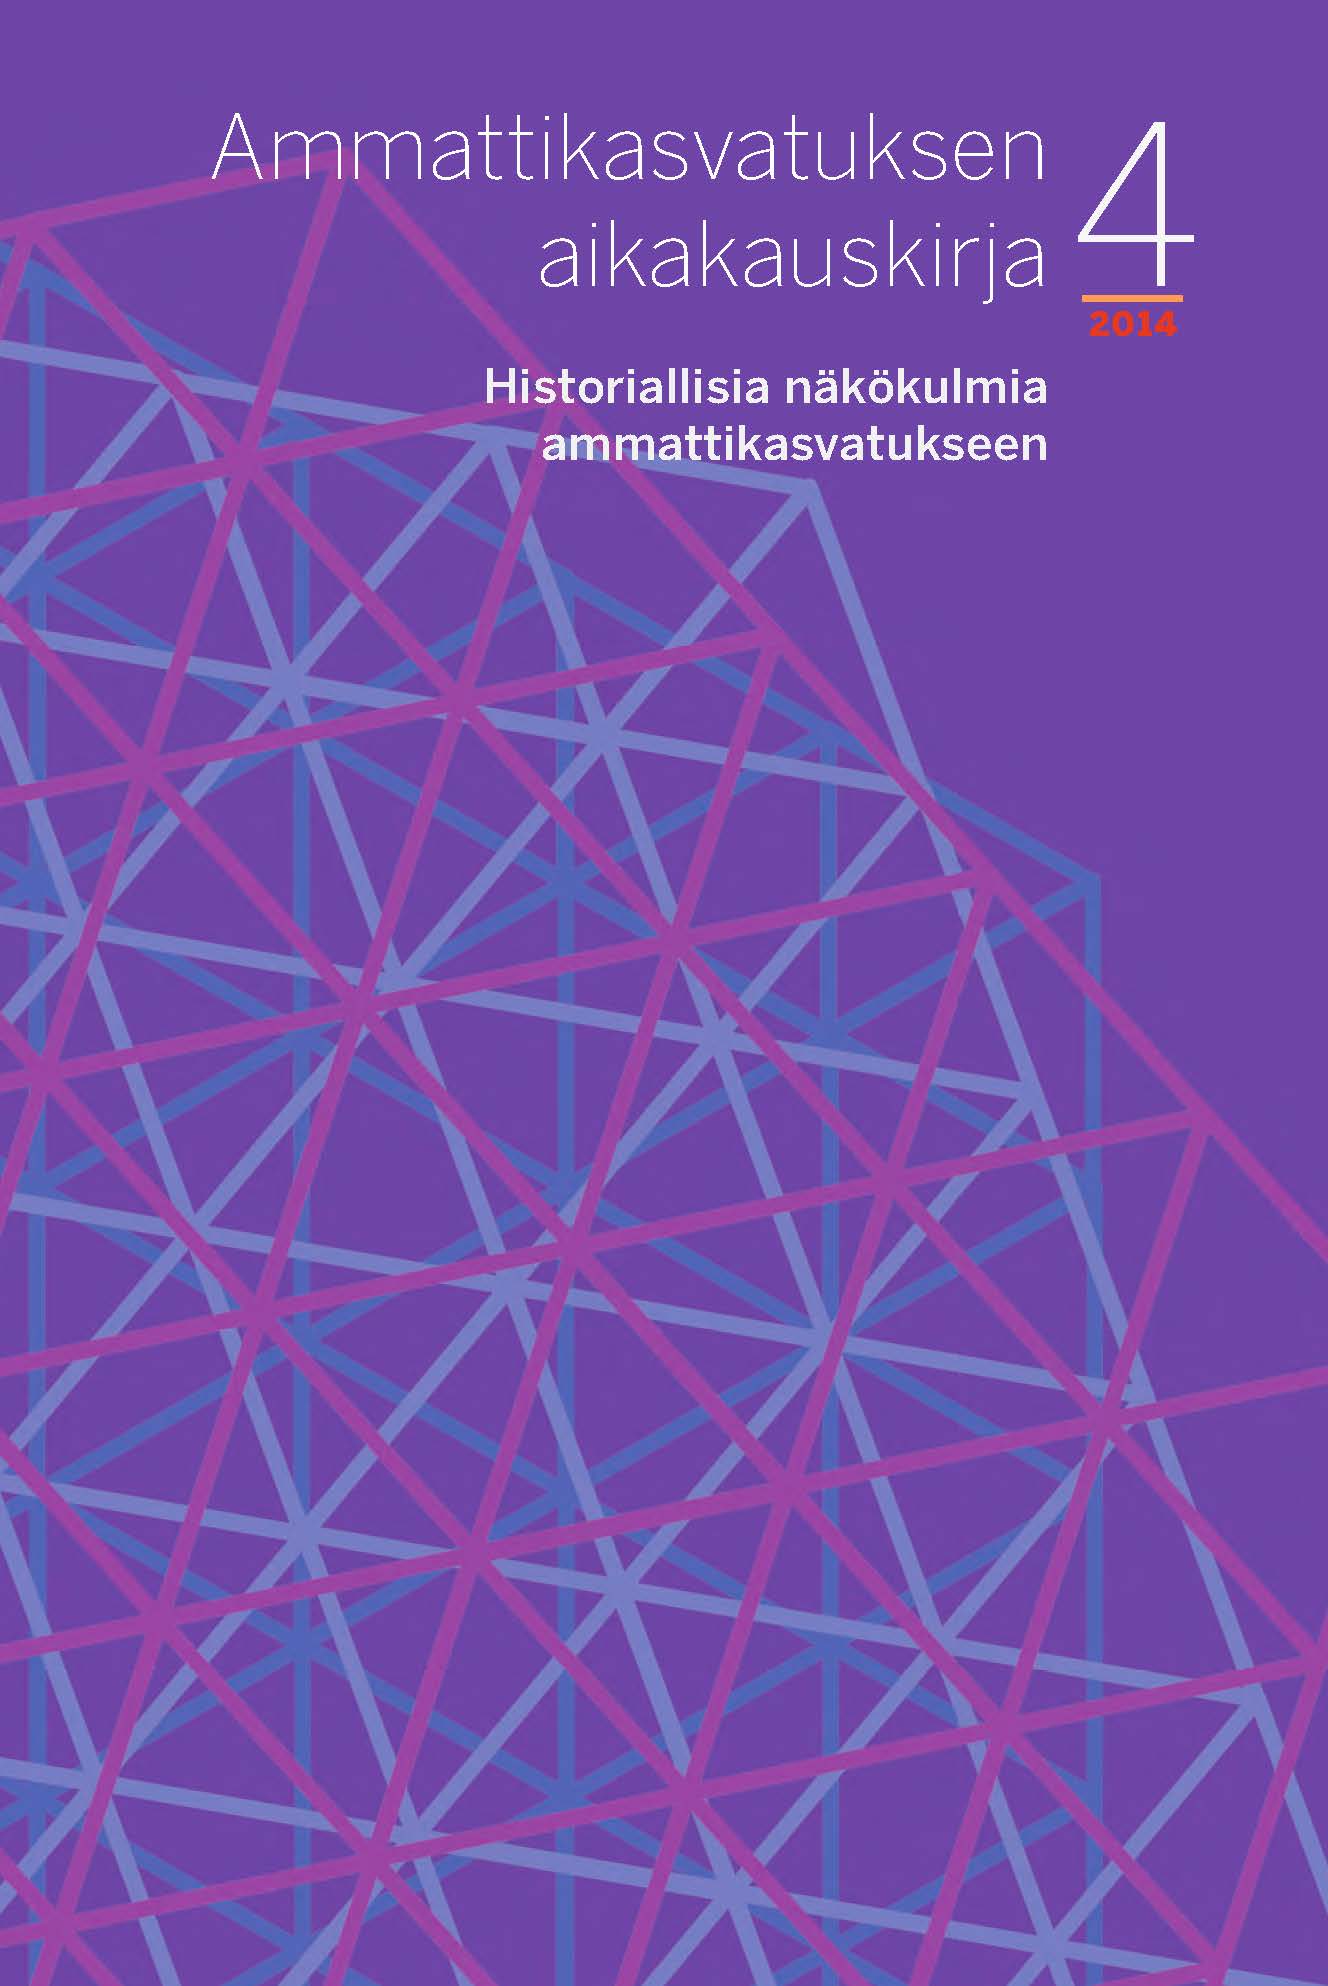 					Näytä Vol 16 Nro 4 (2014): Historiallisia näkökulmia ammattikasvatukseen
				